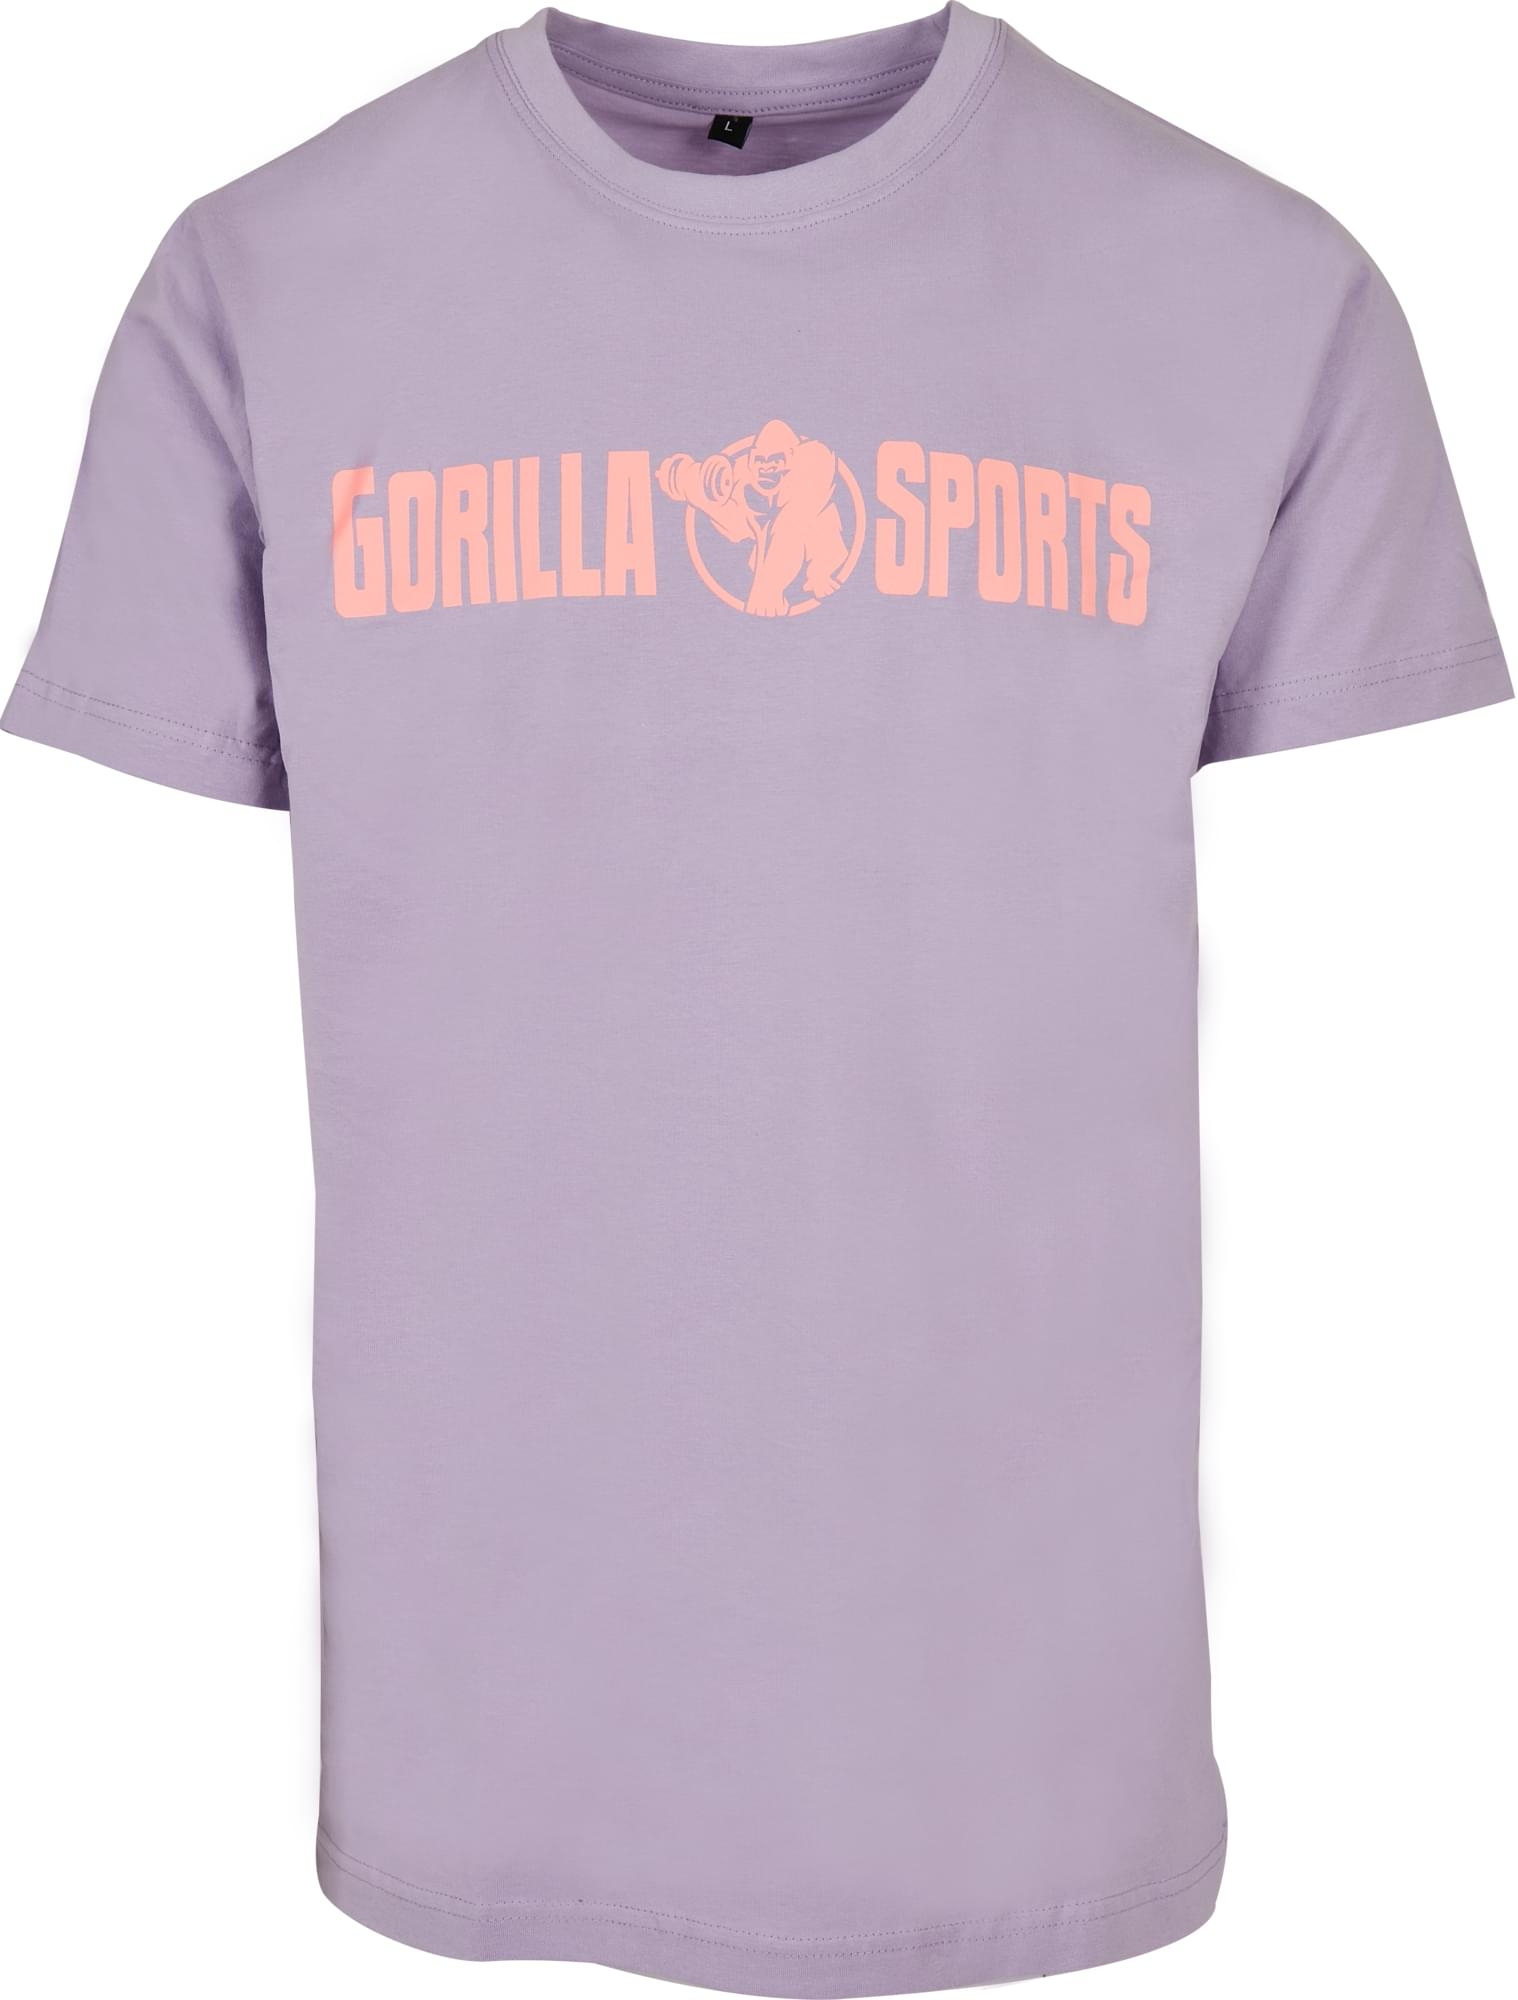 T-shirt Ã col rond - taille S - coloris violet/corail